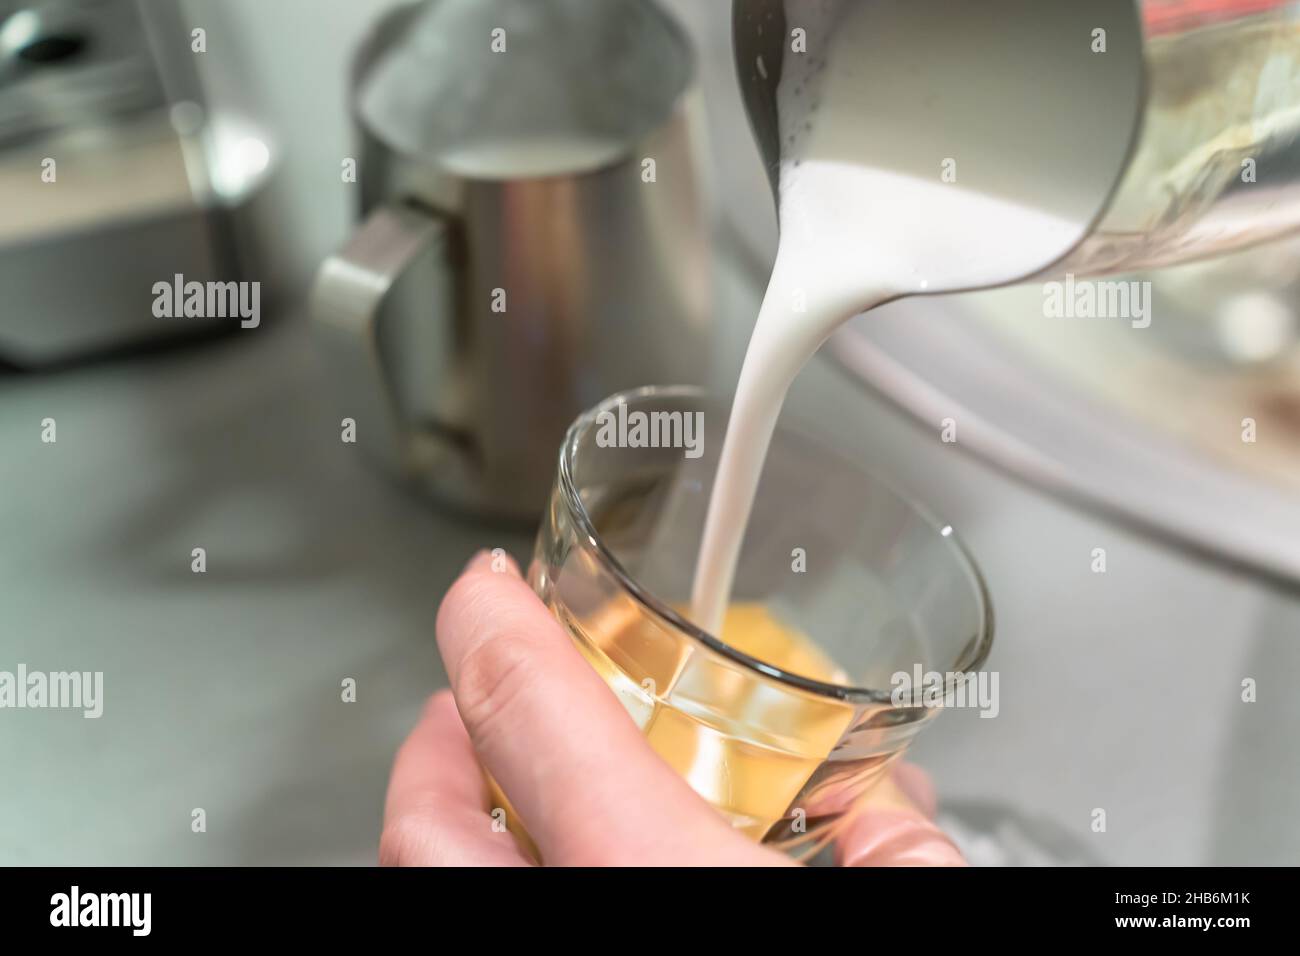 Le barista verse de la mousse de lait dans un verre à espresso Photo Stock  - Alamy